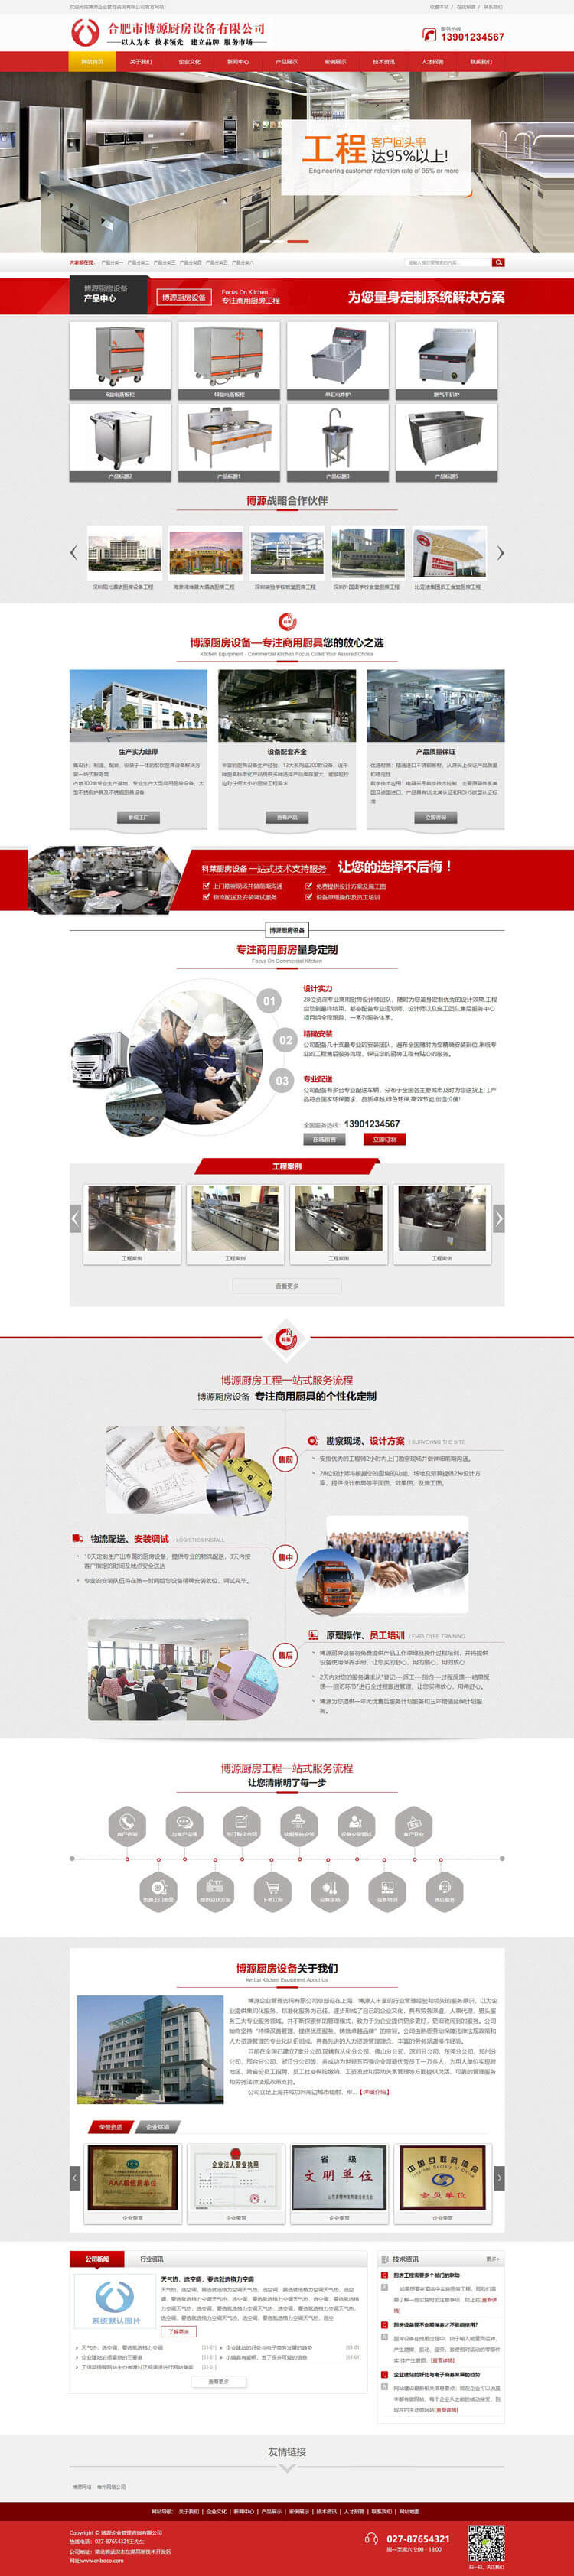 营销型厨房设备网站源码程序-BY044-2